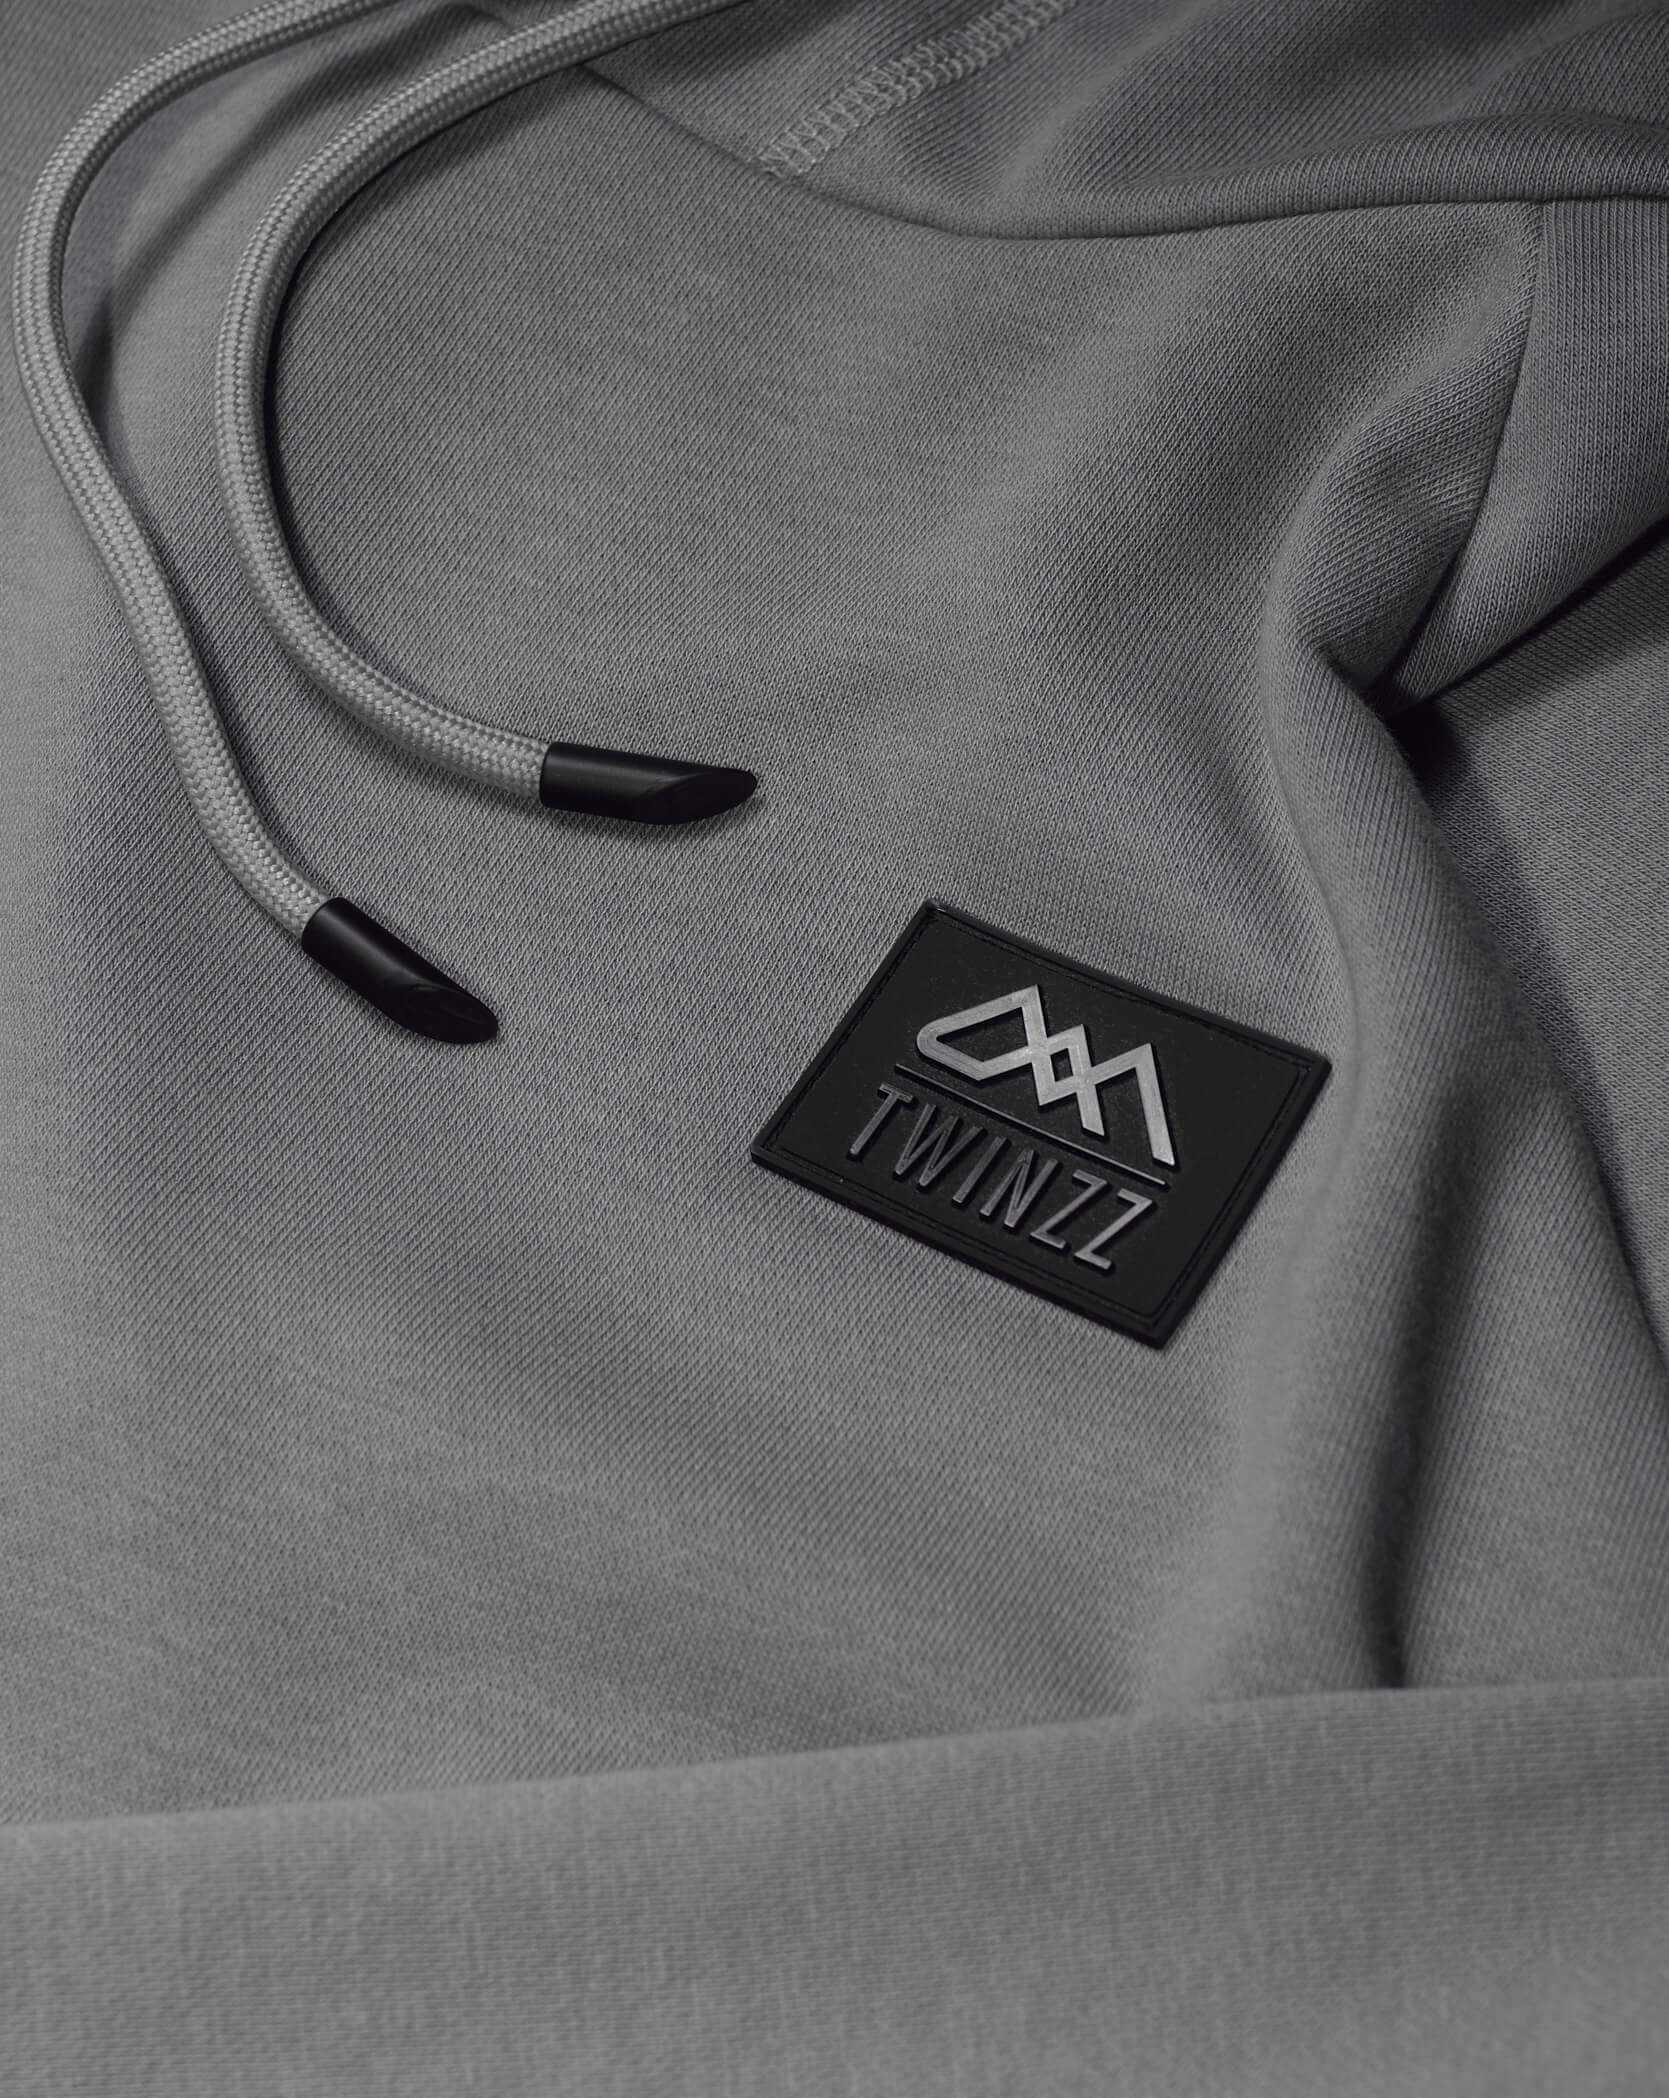 Twinzz grey lifestyle hoodie logo